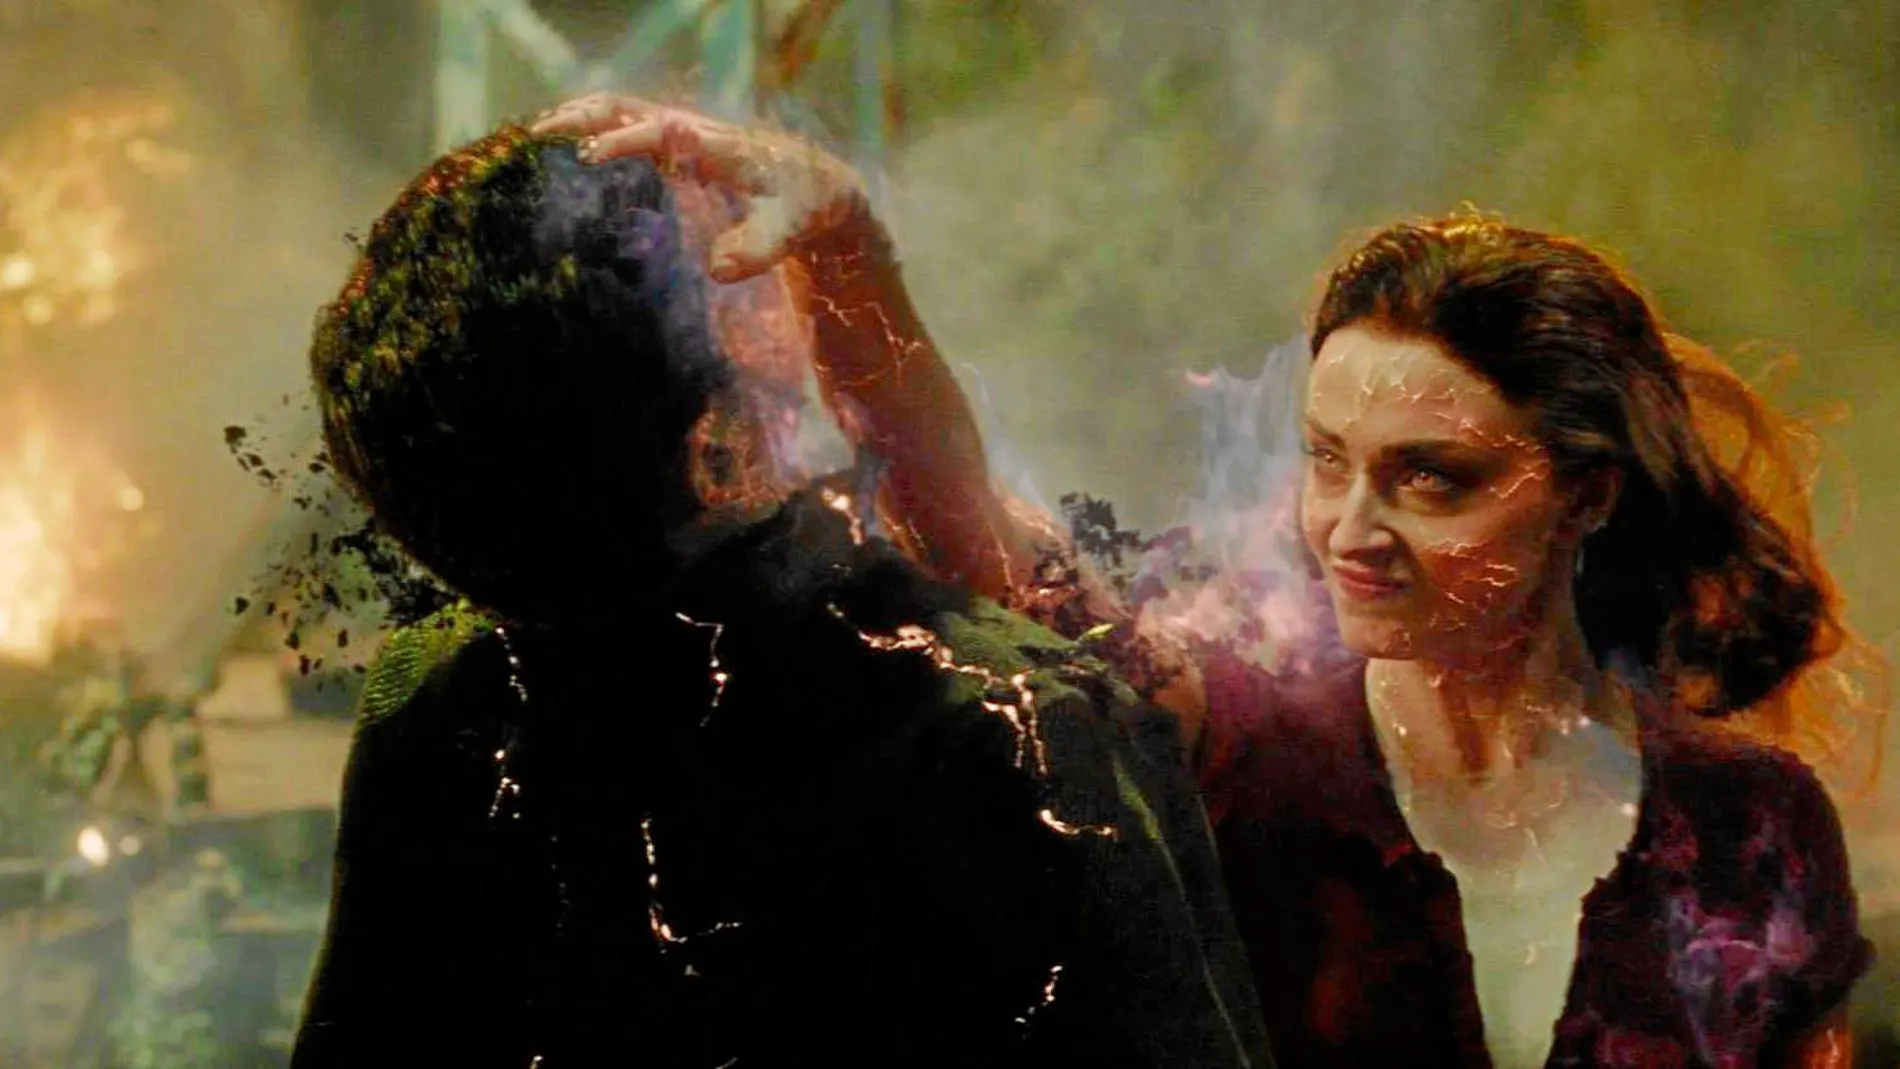 Sophie Turner interpreta a Jean Grey, que se convierte en Fénix Oscura en esta nueva entrega de la saga mutante